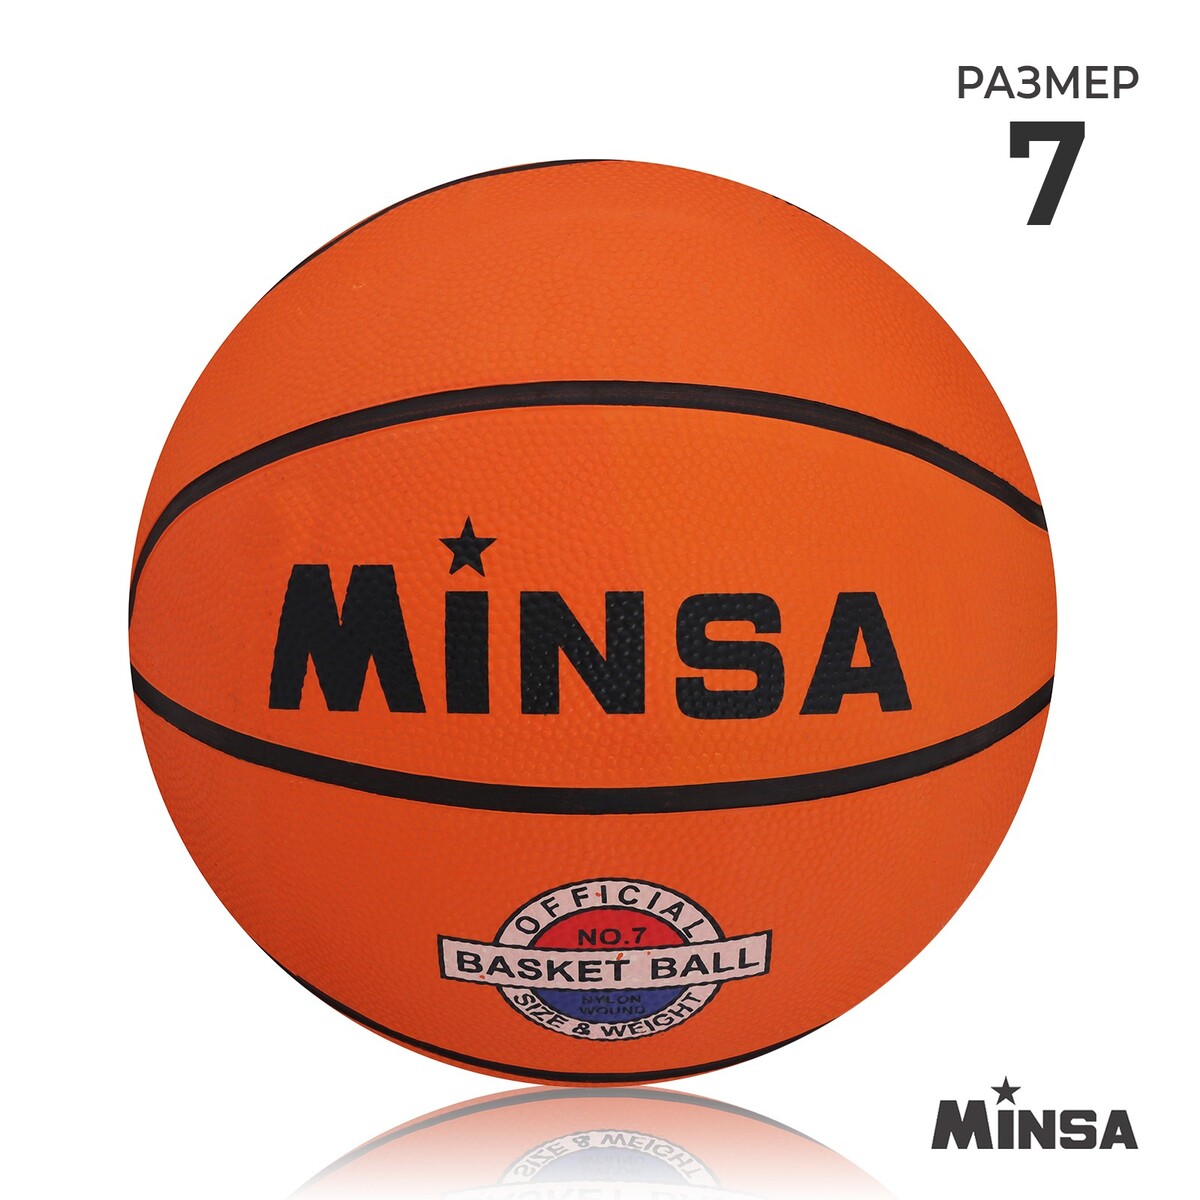 Мяч баскетбольный minsa, пвх, клееный, 8 панелей, р. 7 мяч баскетбольный minsa air power пвх клееный 8 панелей р 7